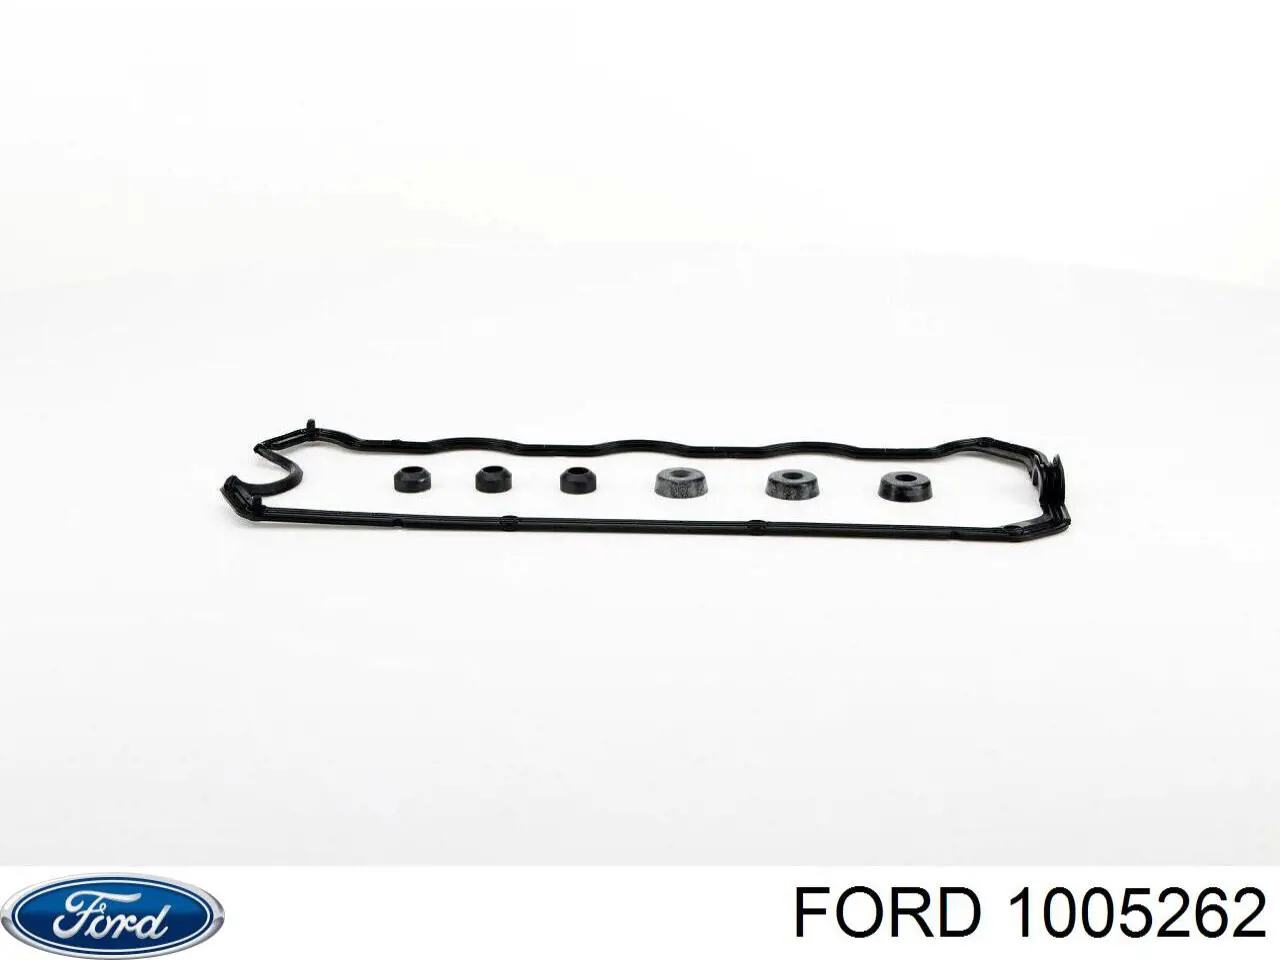 1005262 Ford juego de juntas, tapa de culata de cilindro, anillo de junta